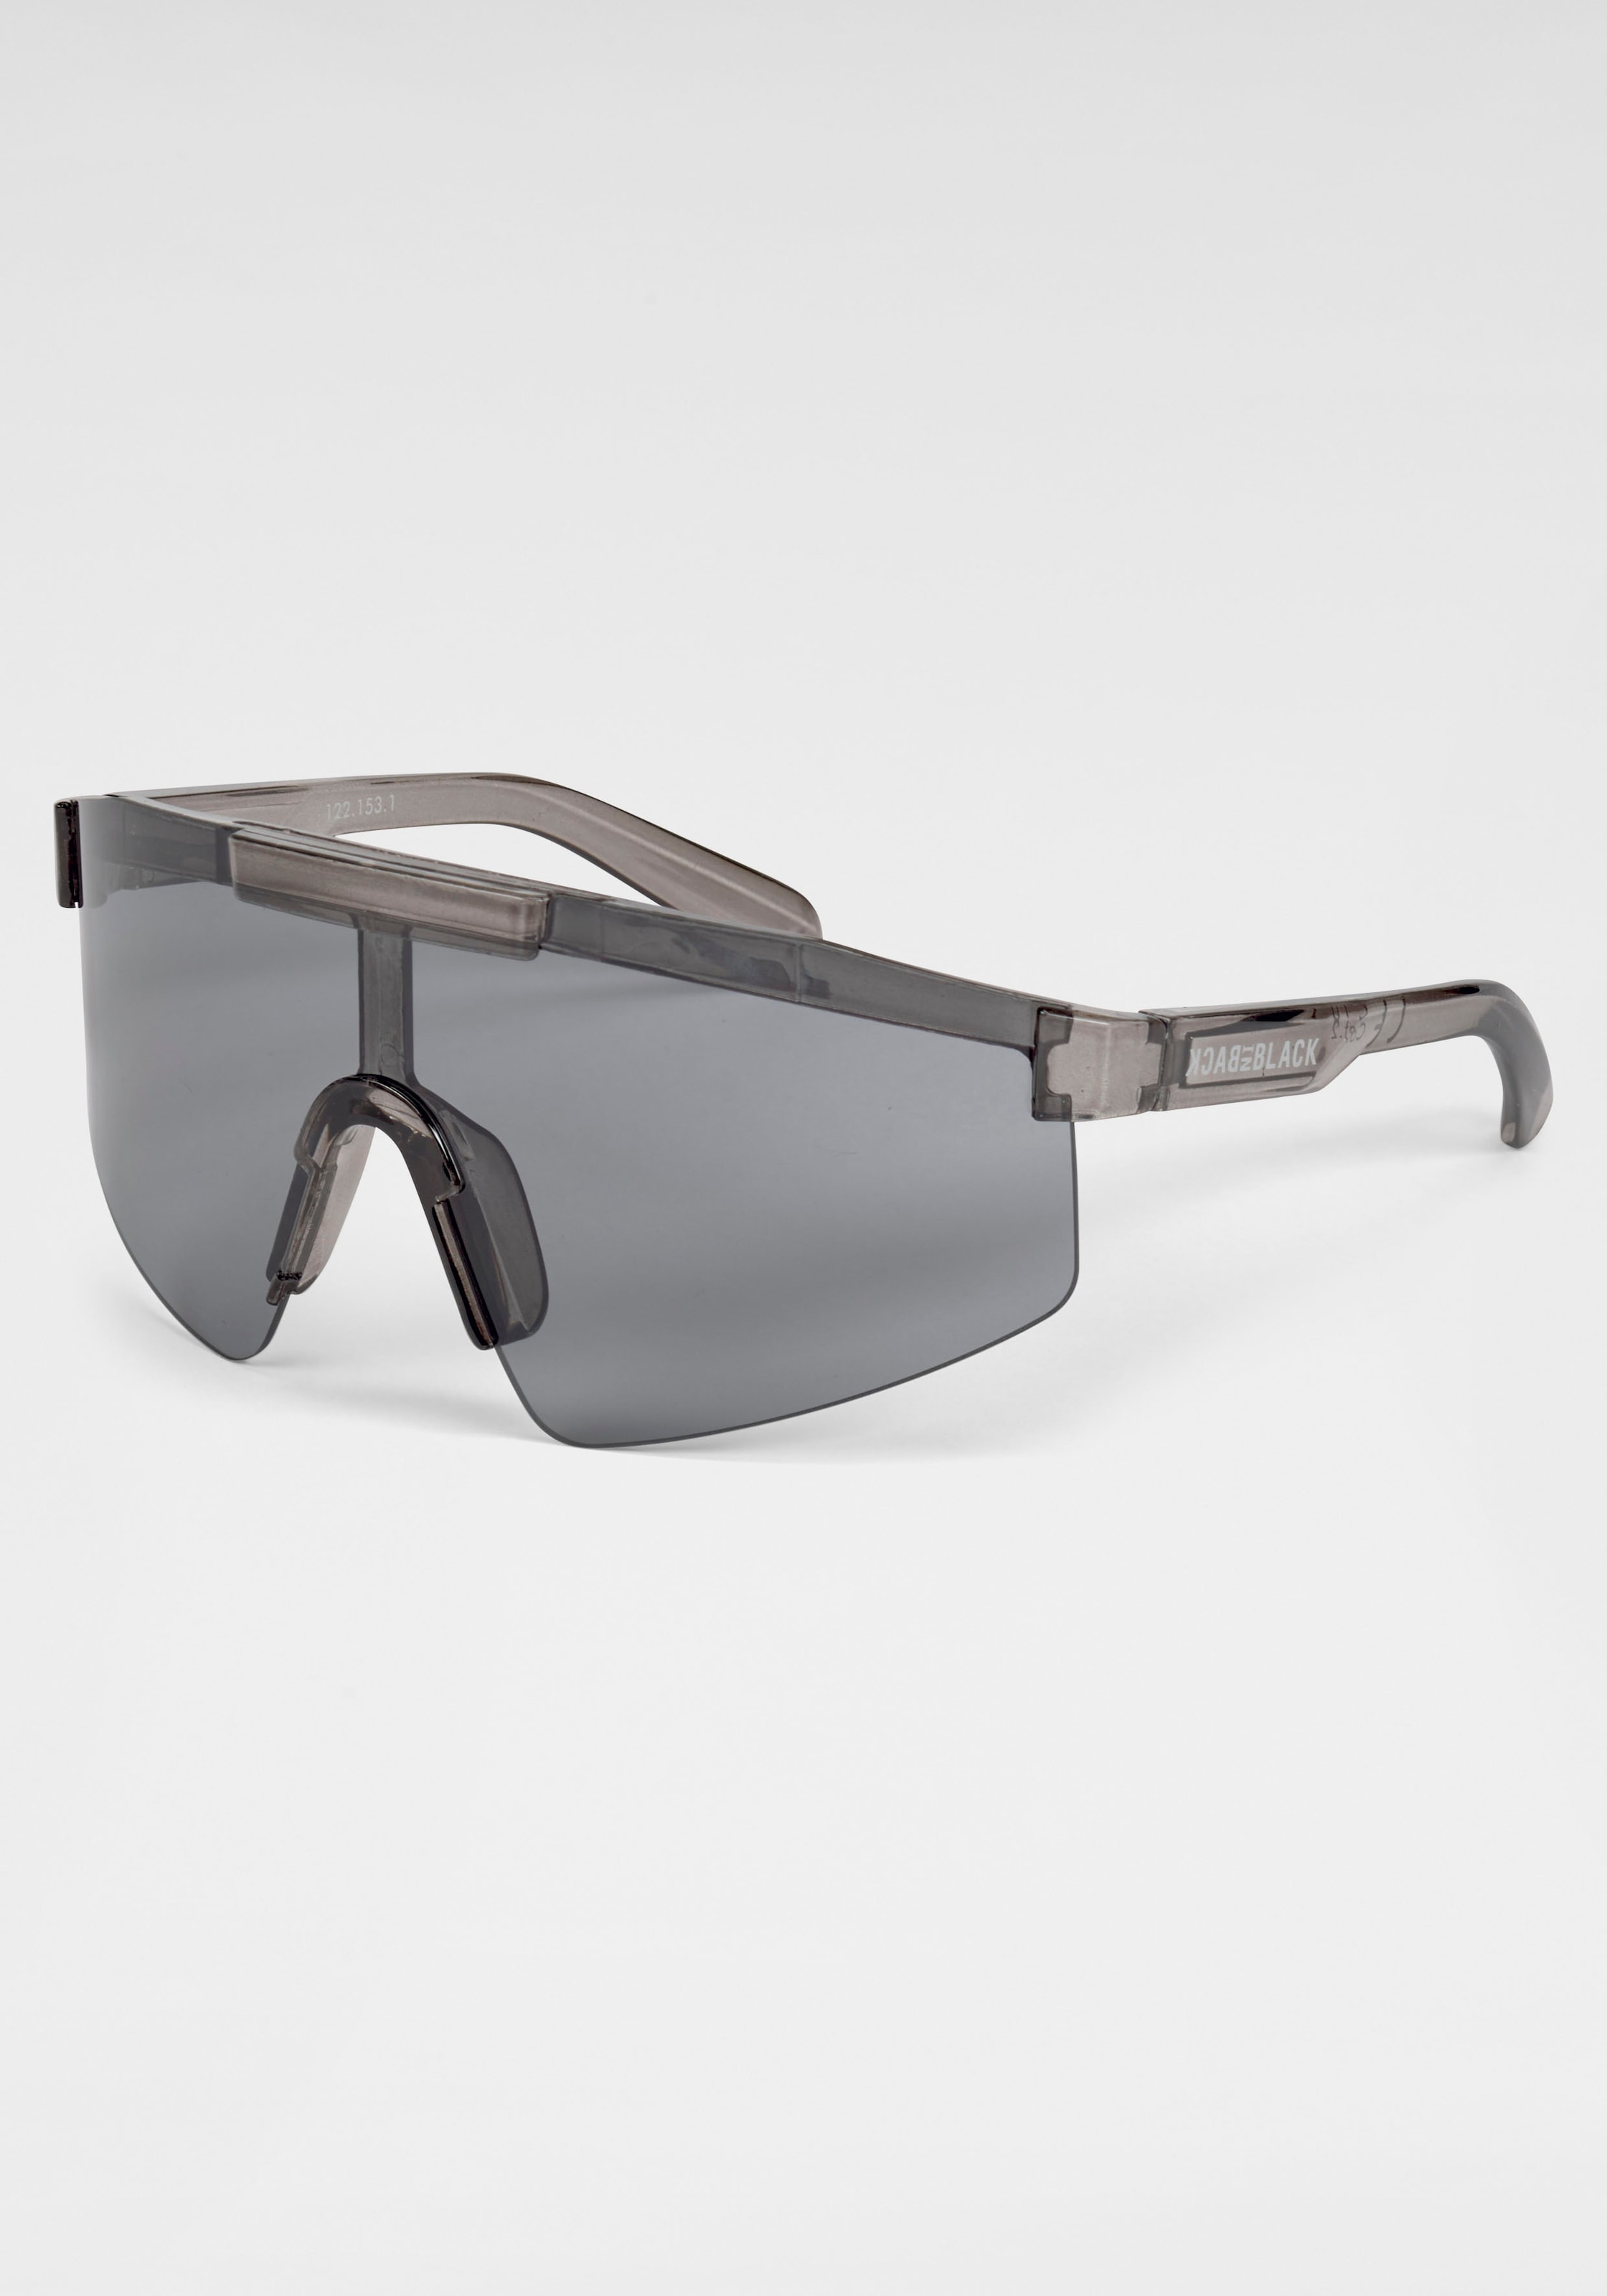 BACK IN BLACK Eyewear Sonnenbrille, Stylische Sportbrille mit crystal-smoke Rahmen und dunklen Gläsern